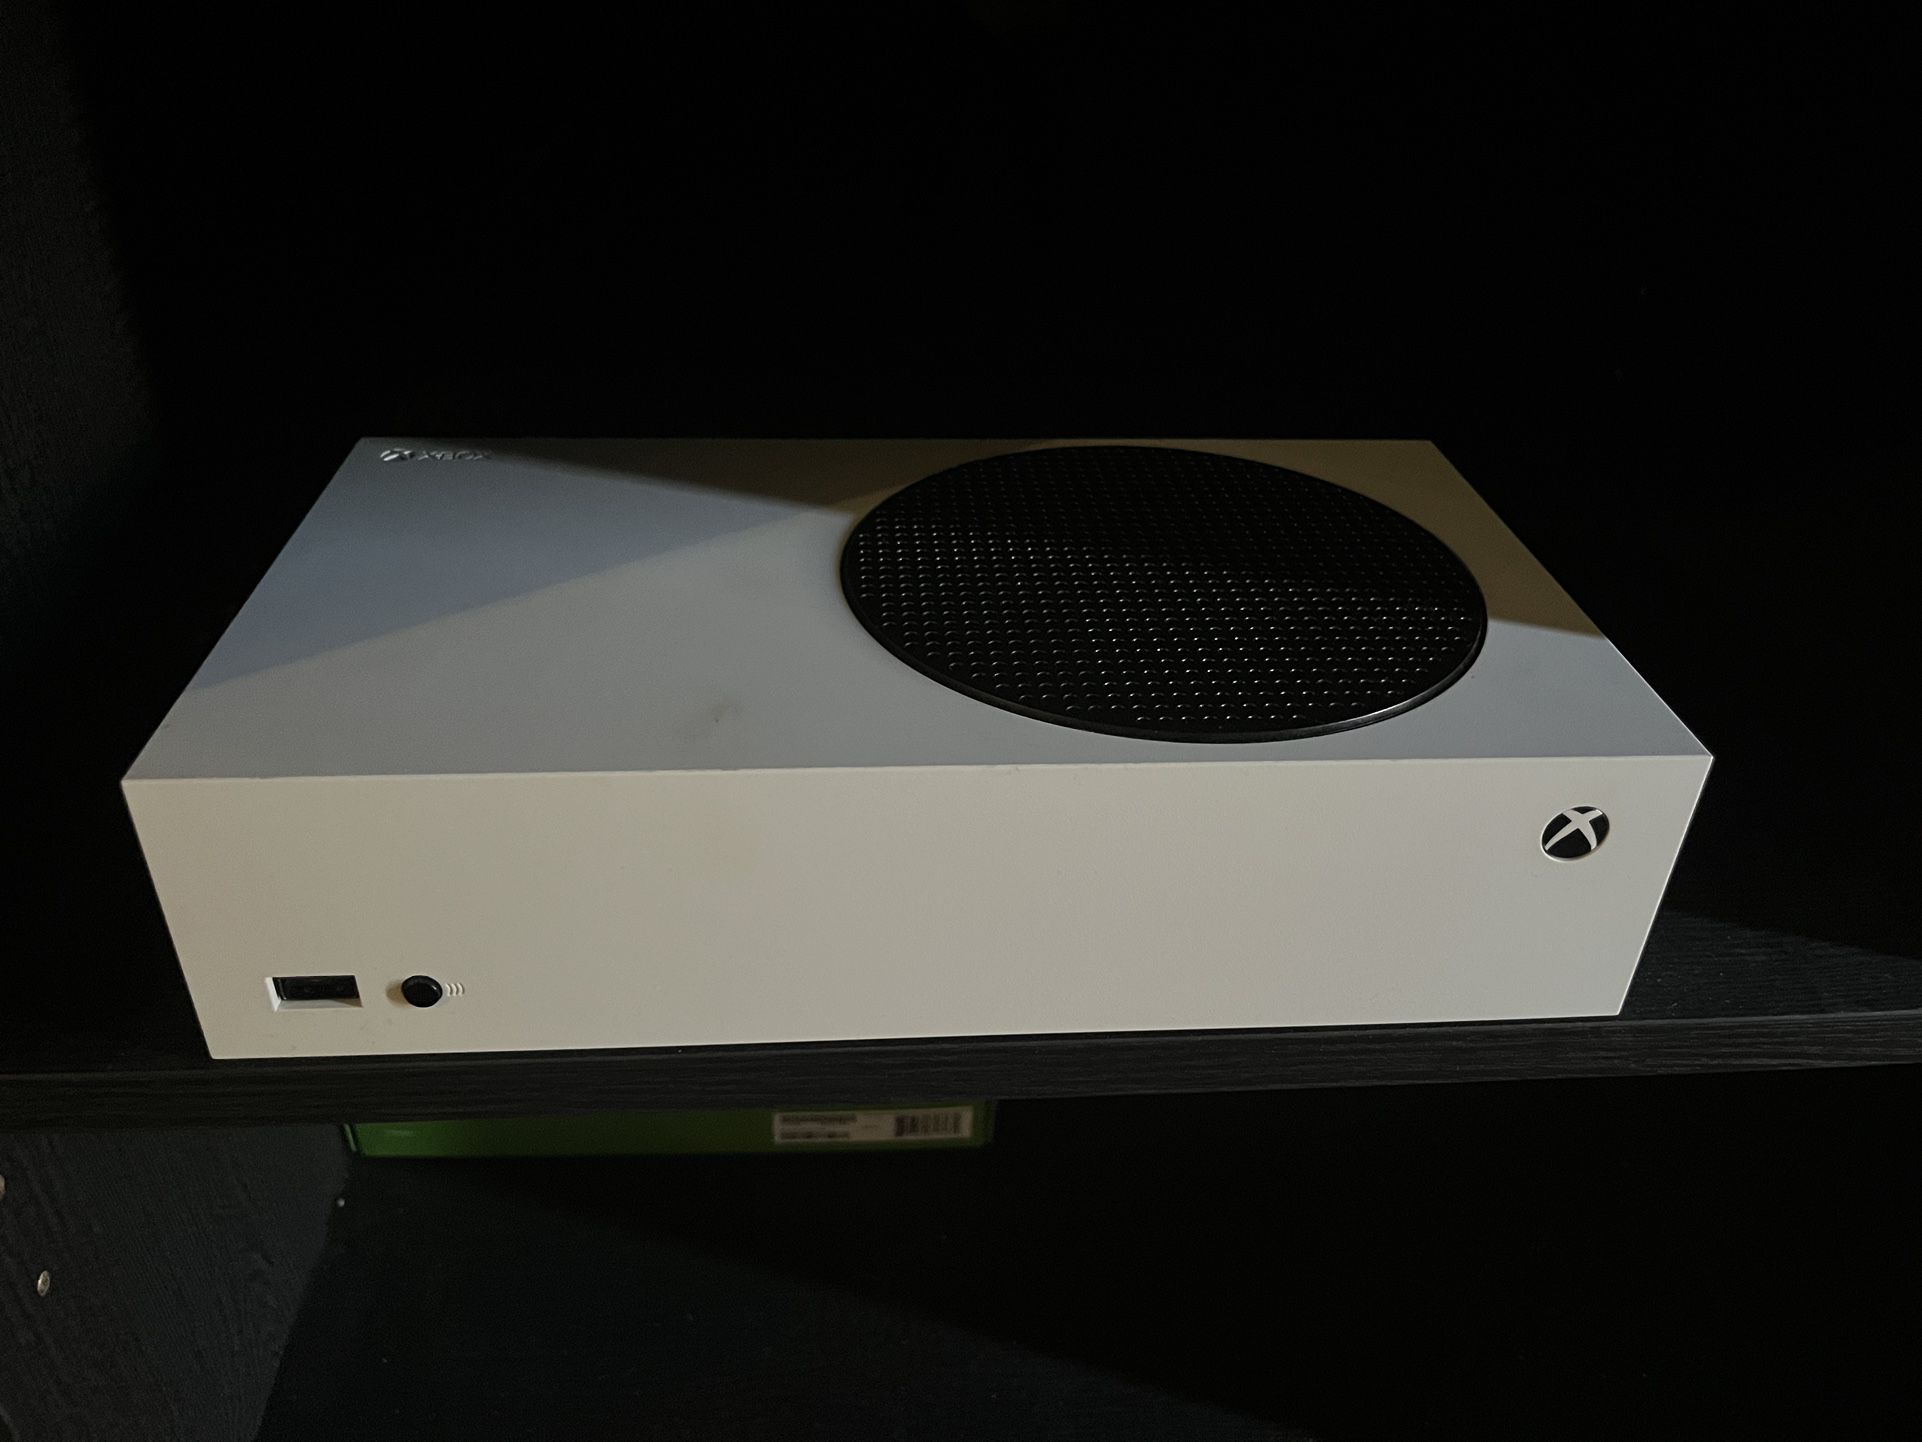 Xbox 1 S Next Gen